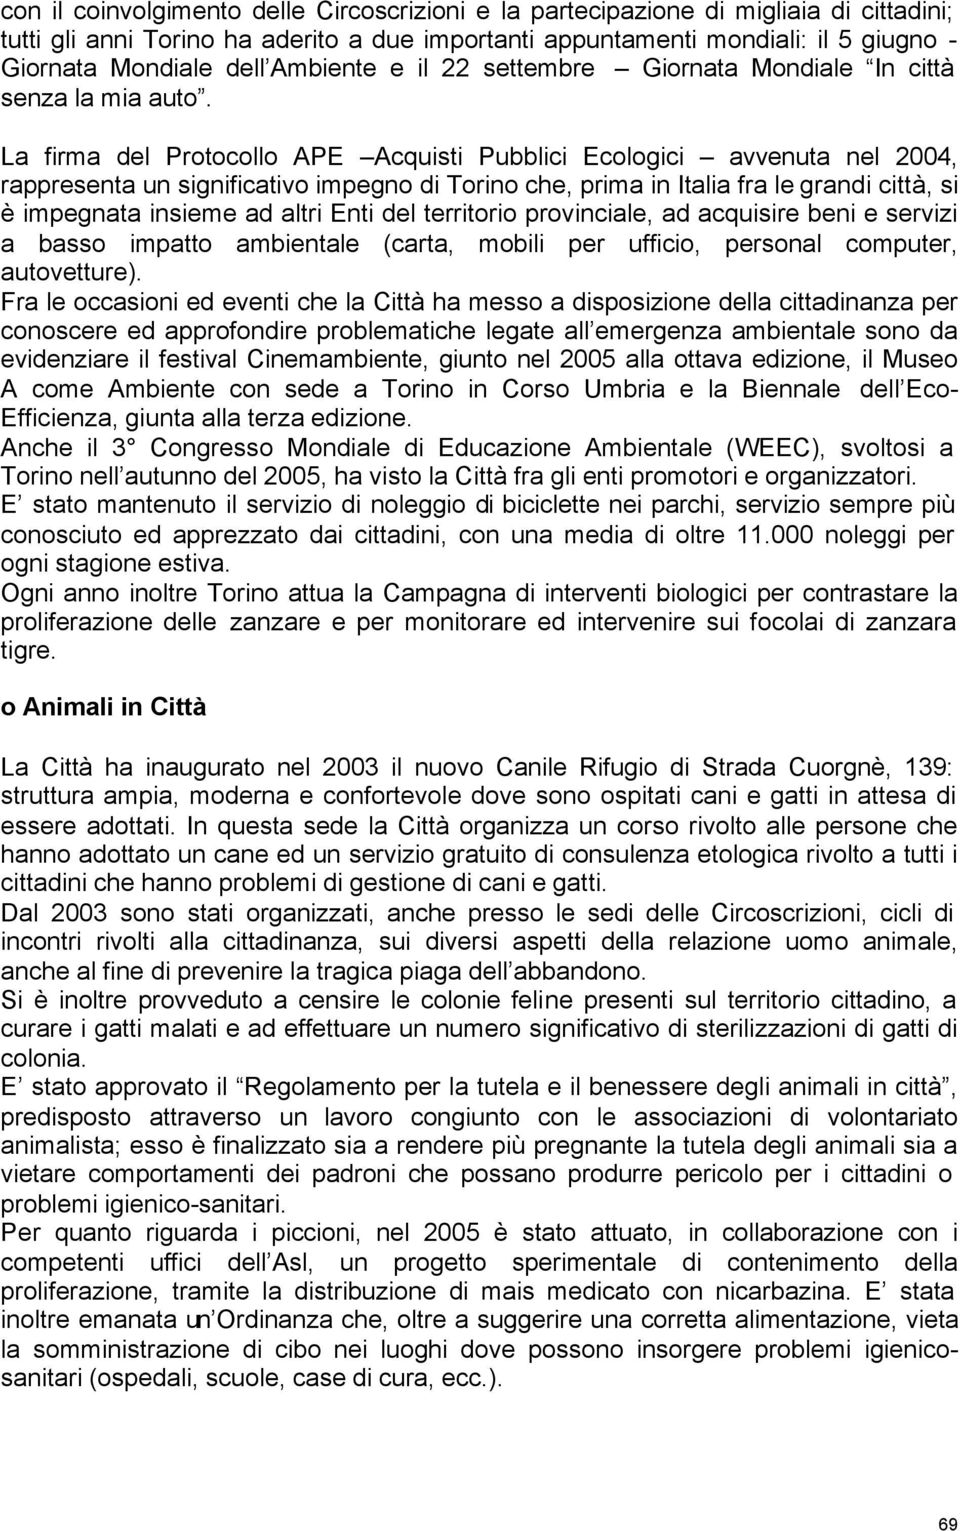 La firma del Protocollo APE Acquisti Pubblici Ecologici avvenuta nel 2004, rappresenta un significativo impegno di Torino che, prima in Italia fra le grandi città, si è impegnata insieme ad altri